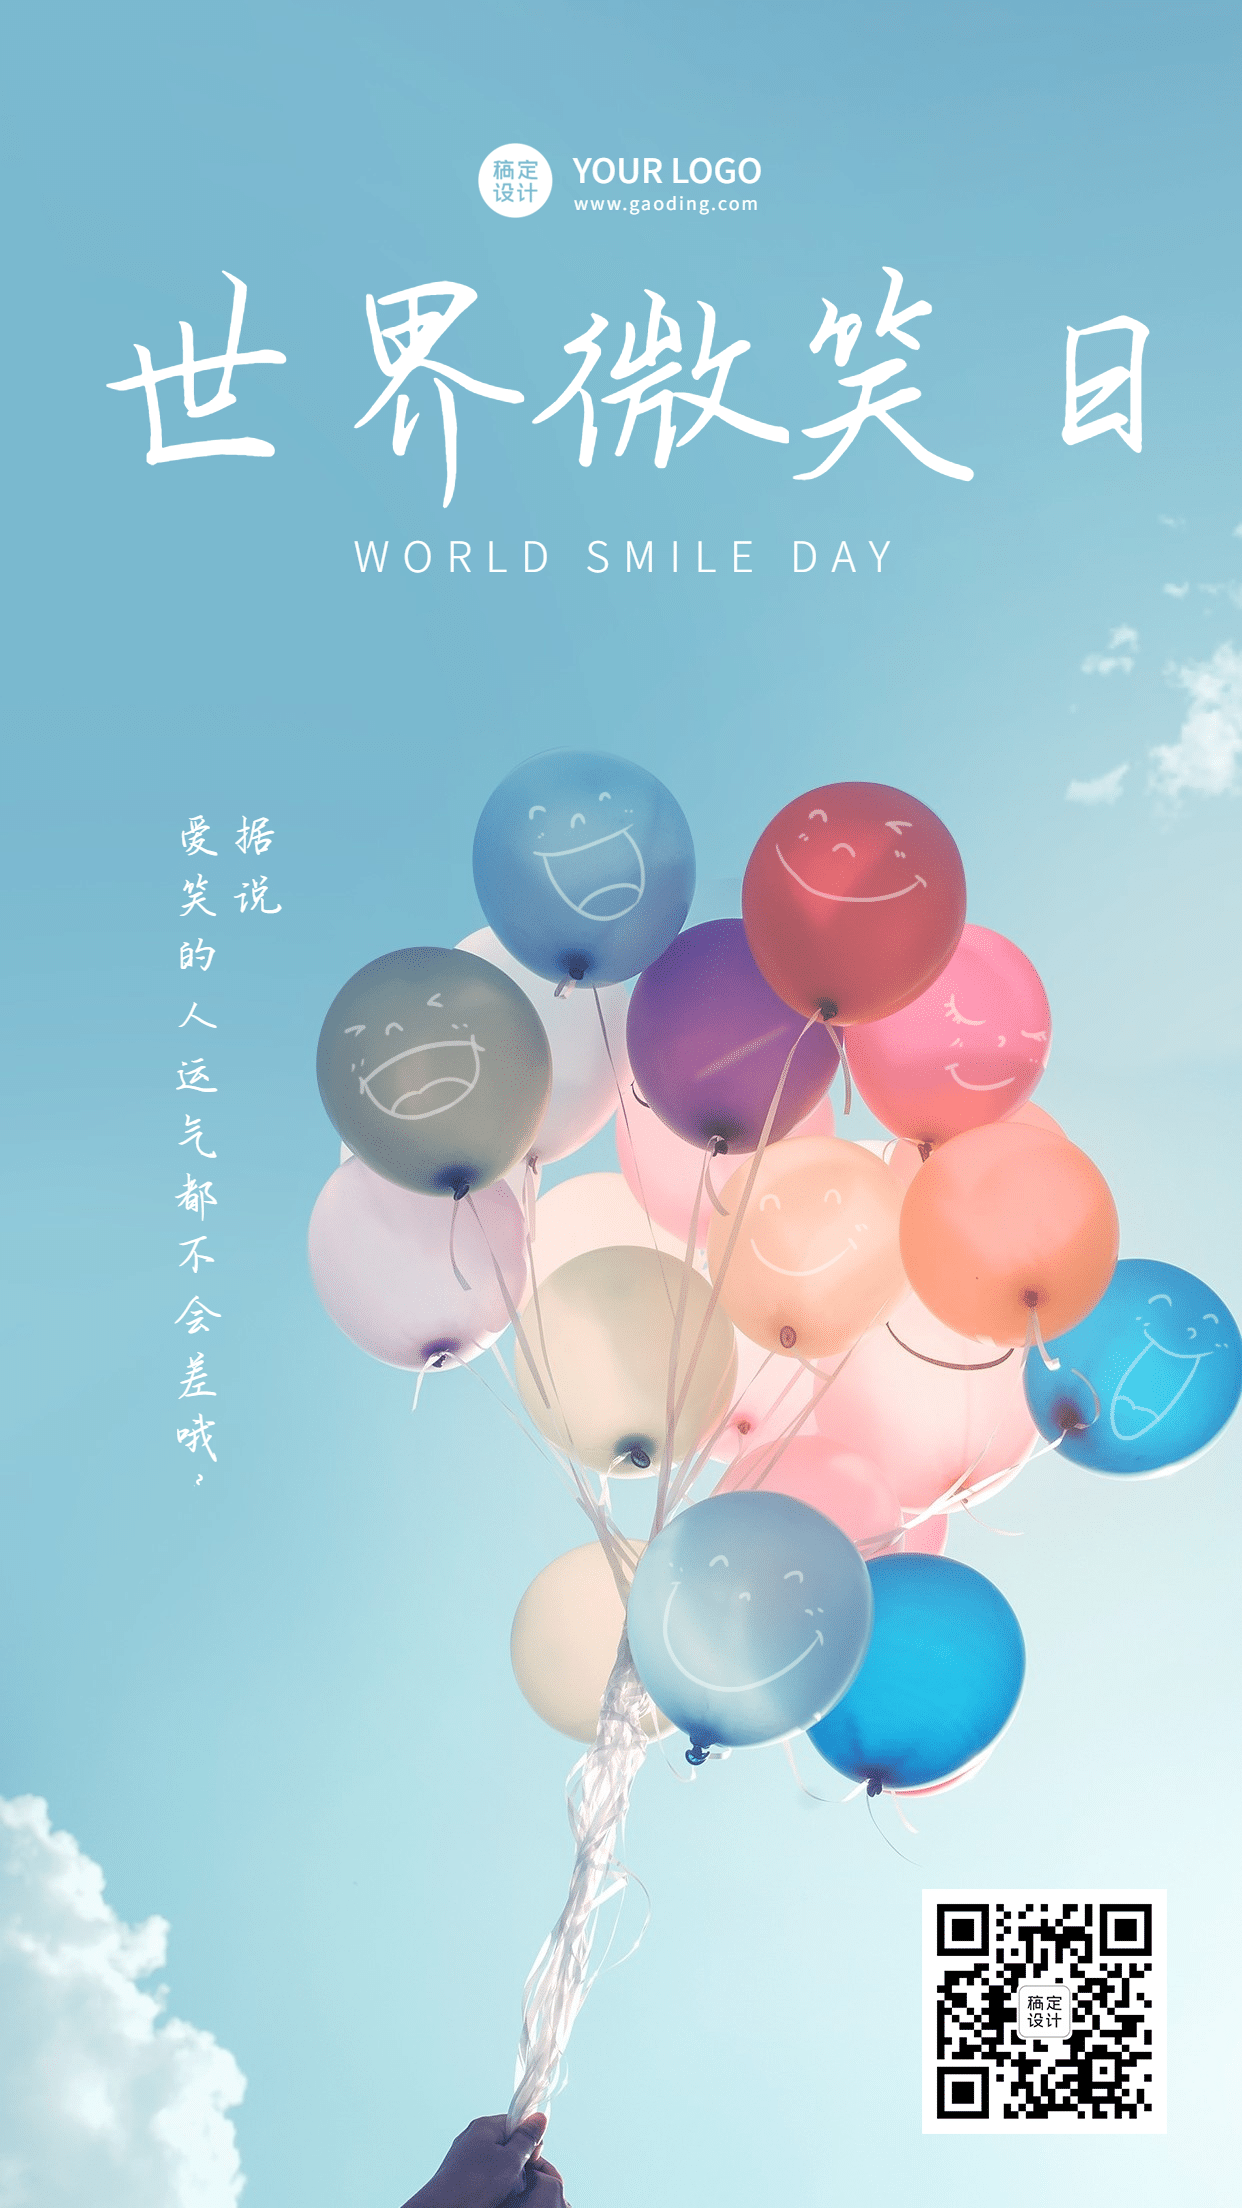 世界微笑日创意气球笑脸手机海报